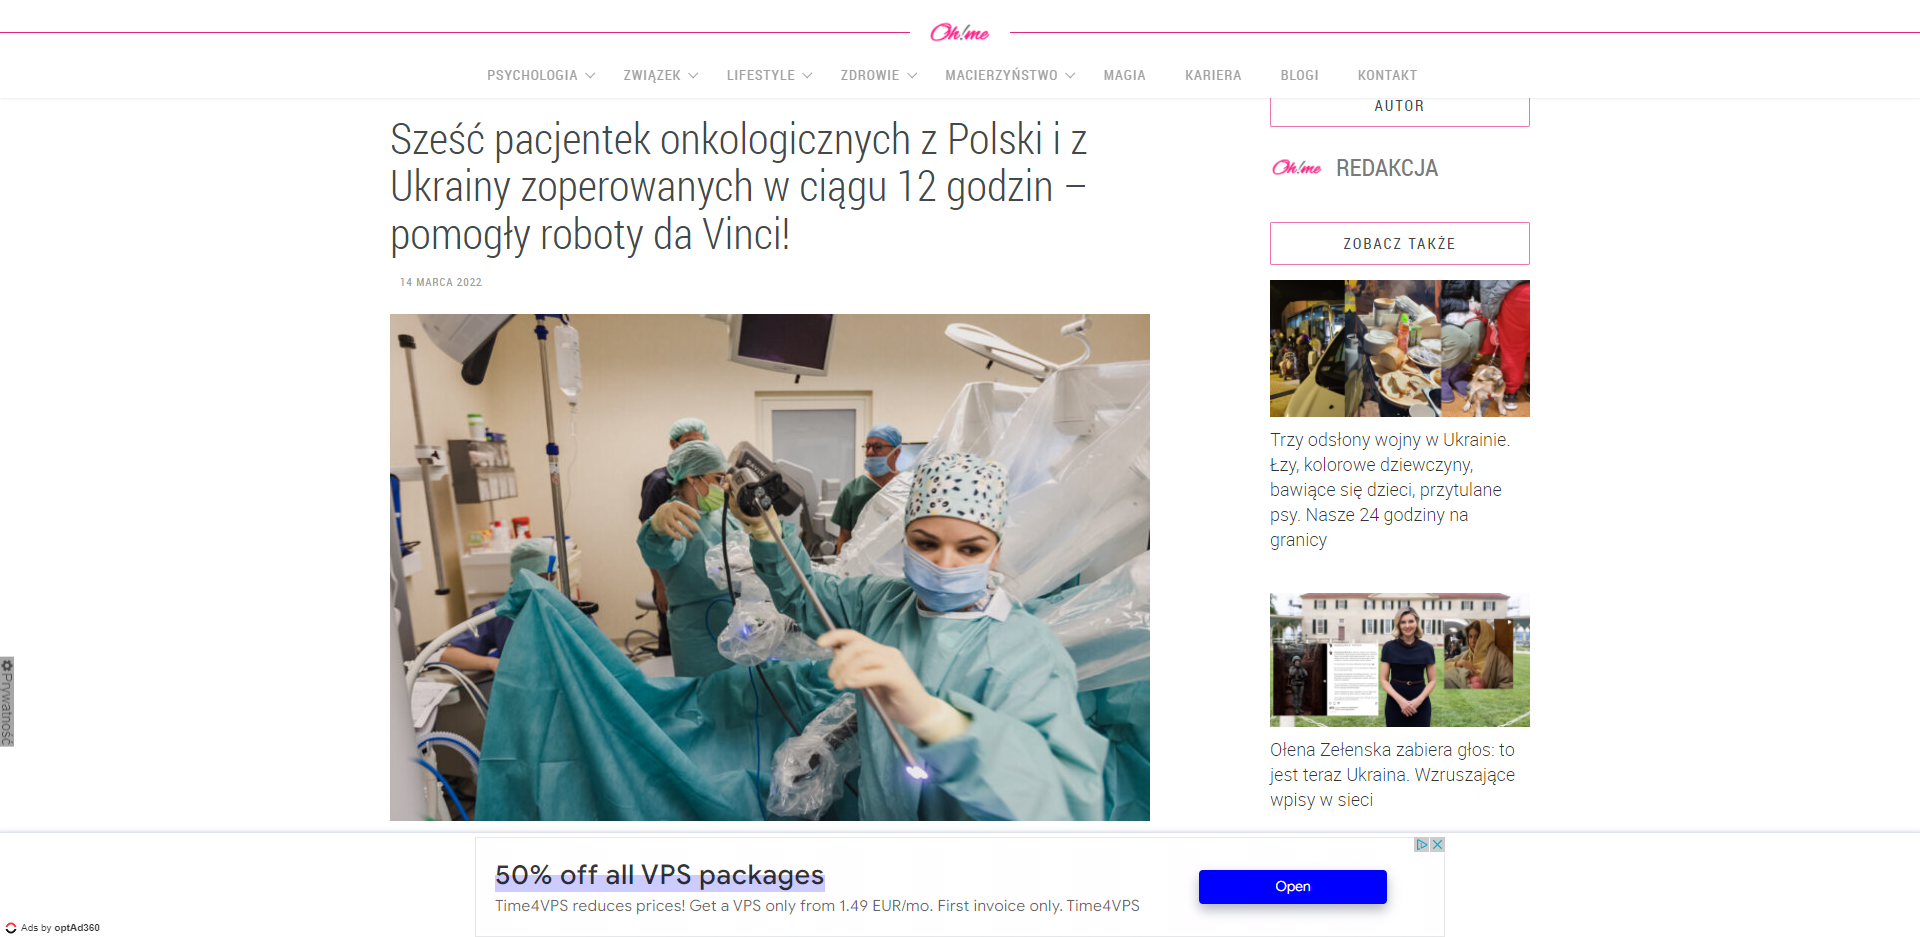 szesc pacjentek onkologicznych z polski i z ukrainy zoperowanych w ciagu godzin pomogly roboty da vinci